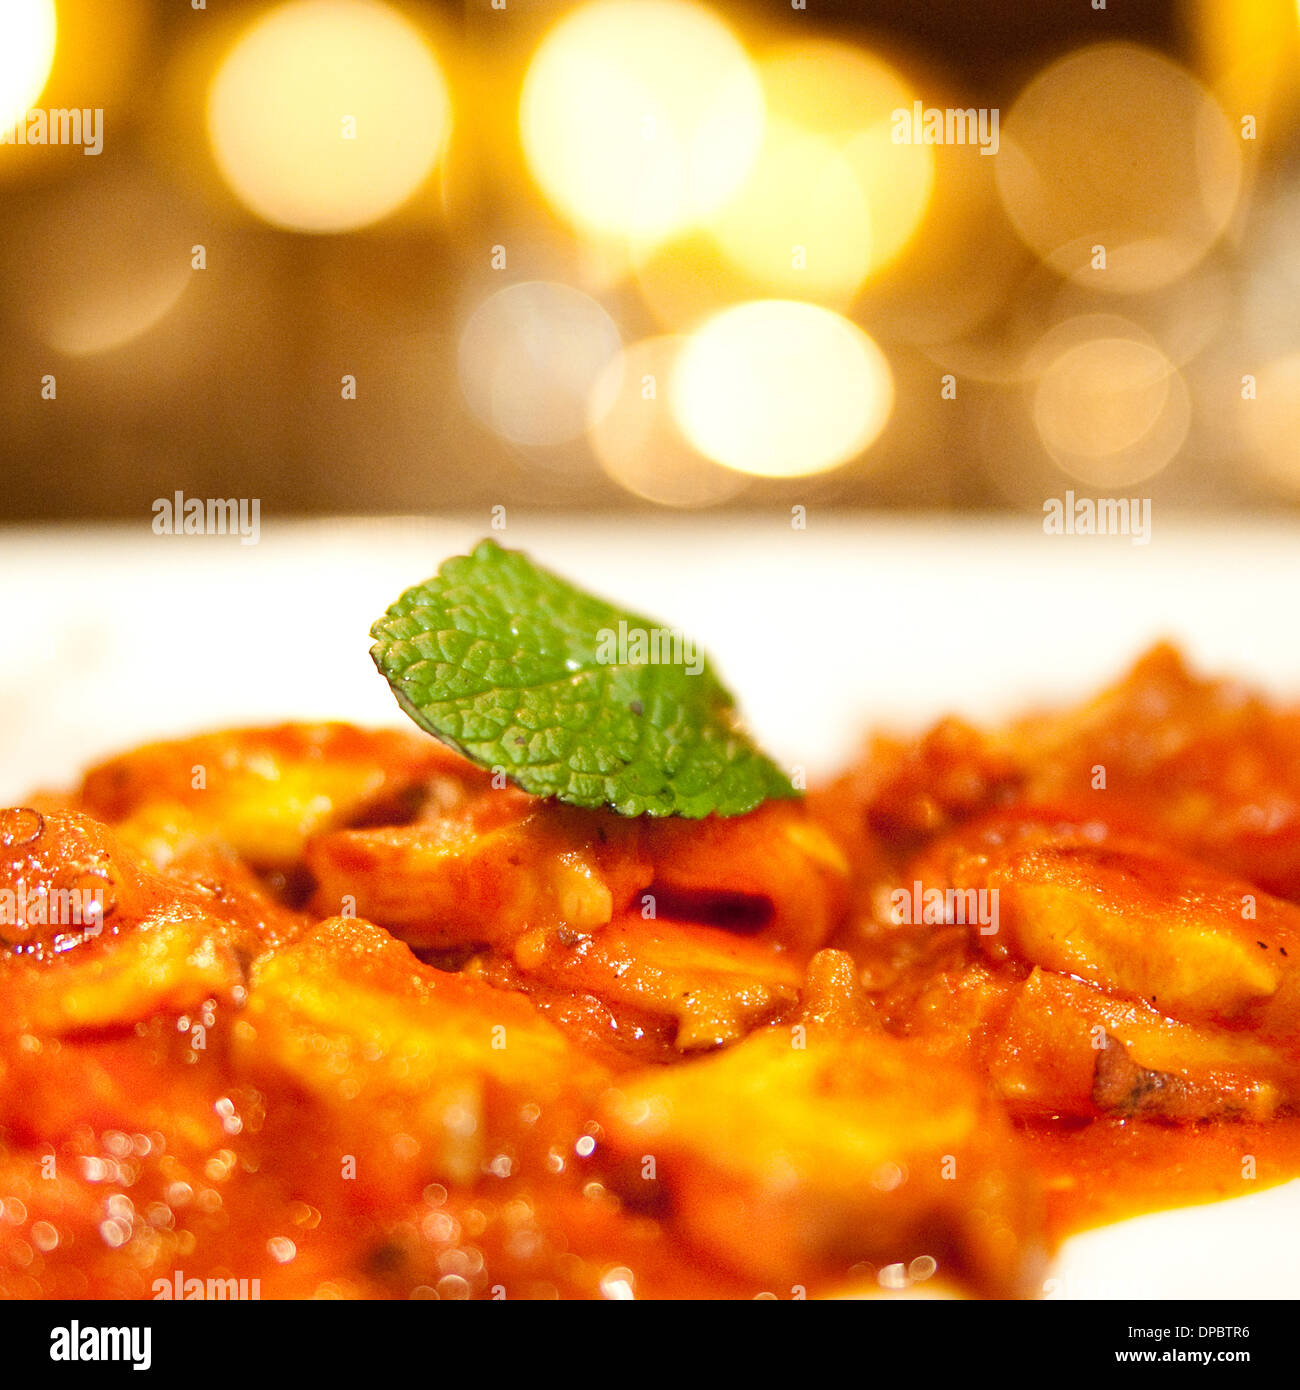 Pasta casera con salsa de tomate y menta en la parte superior. Foto de stock